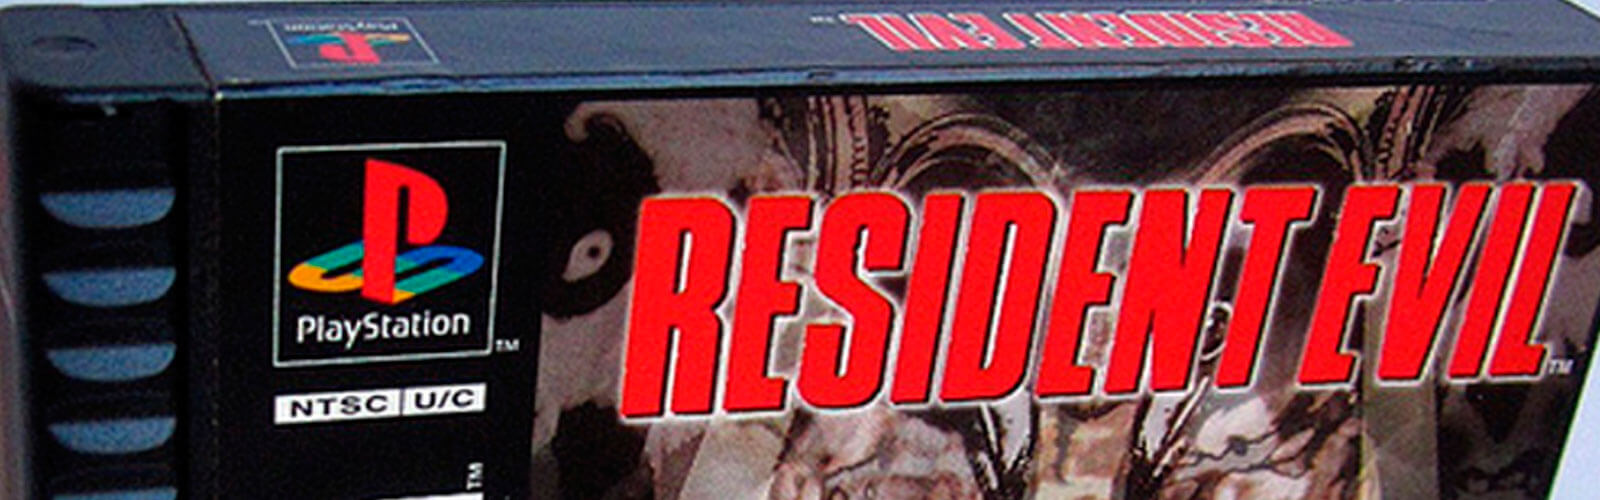 Aquisição - Resident Evil versão Longbox (PS1) Cover